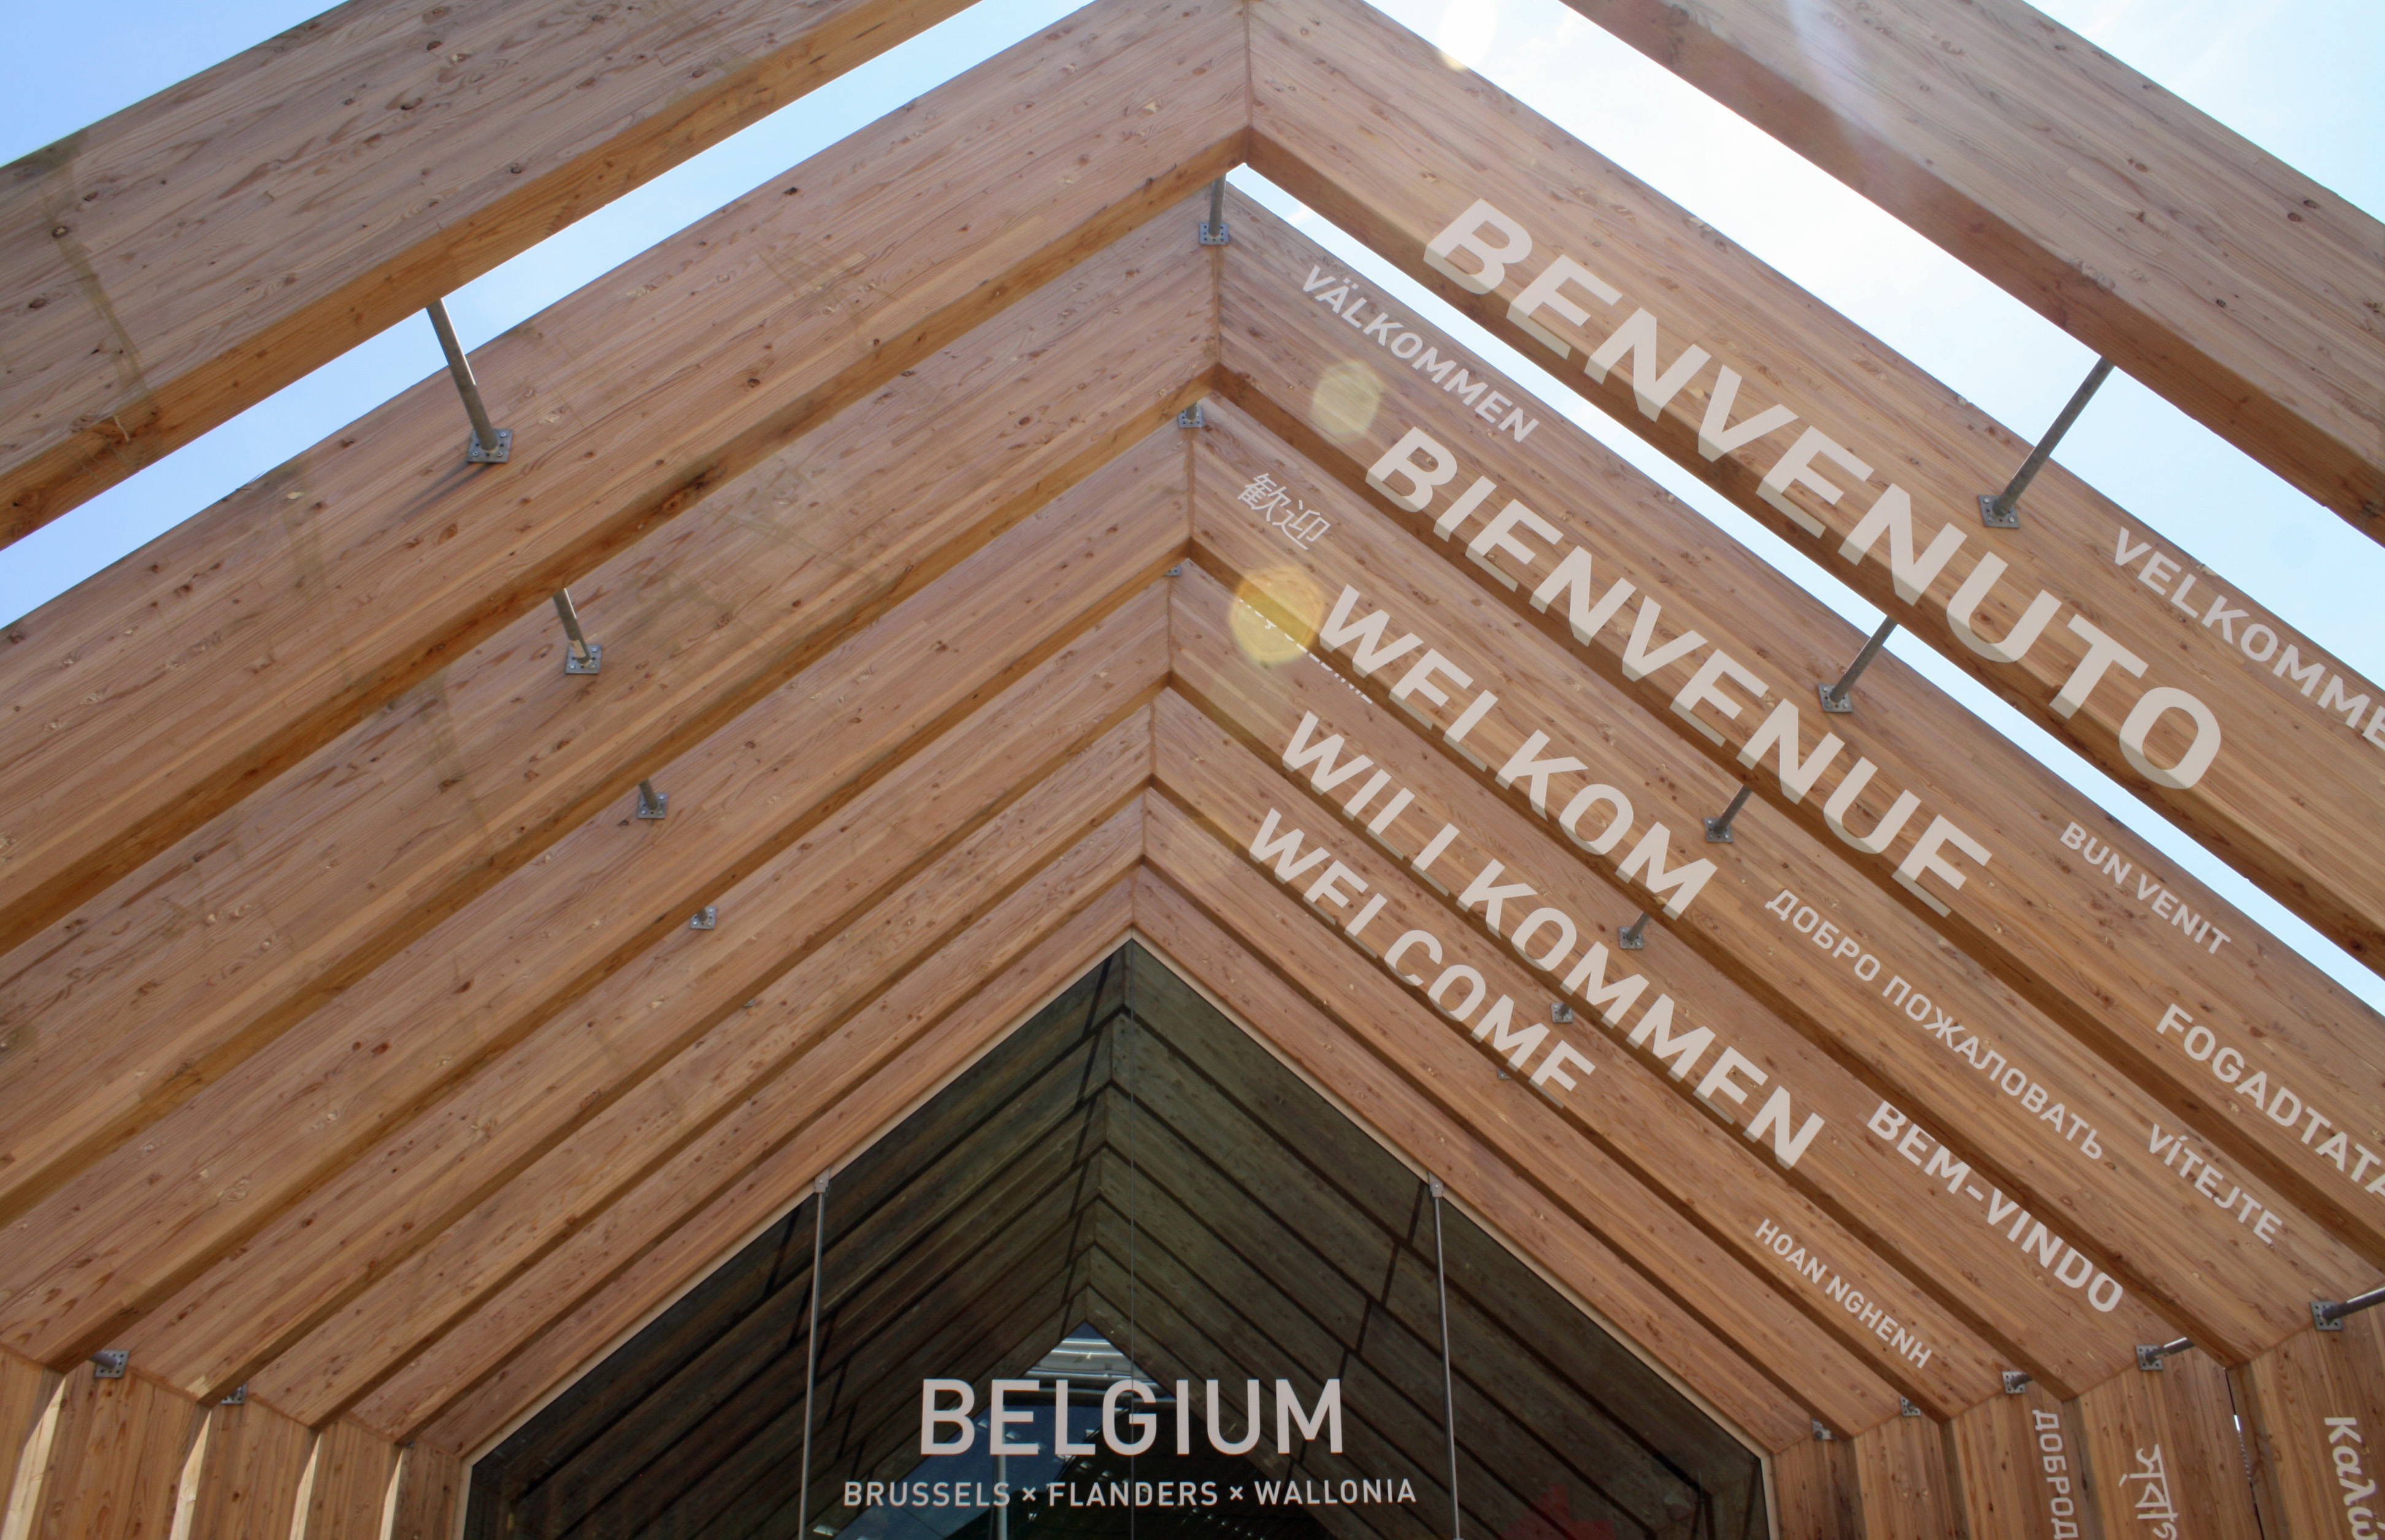 Belgium pavilion